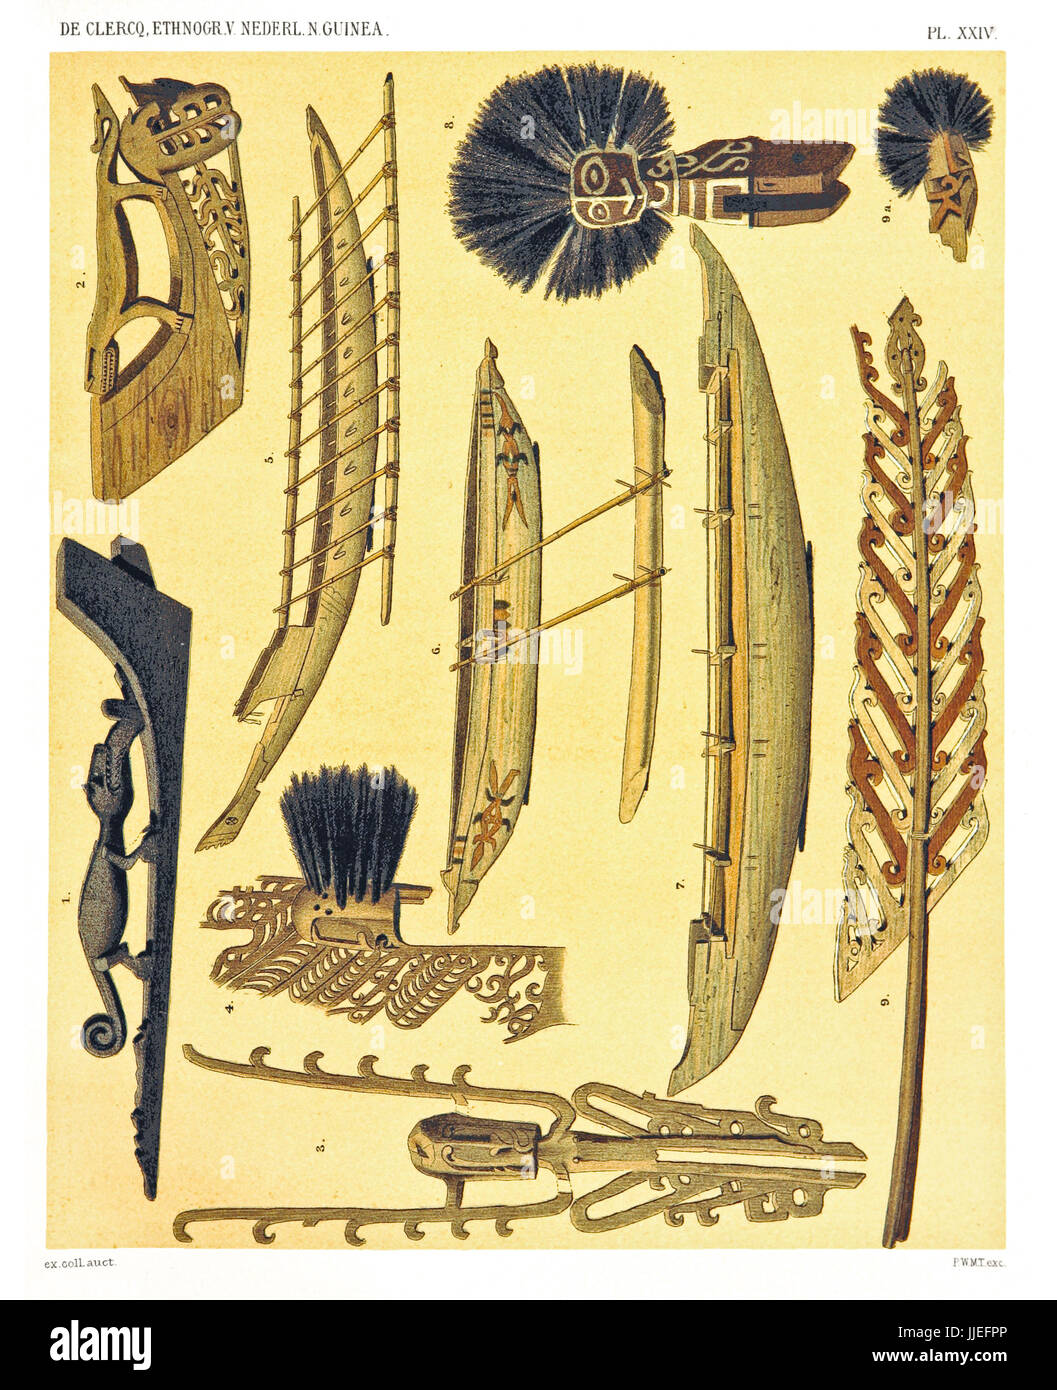 Ilustración de objetos étnicos desde el oeste y norte de la costa de Nueva Guinea Holandesa. Por F.S.A. De Clercq y J.D.E. Schmeltz, Leiden 1893 Foto de stock